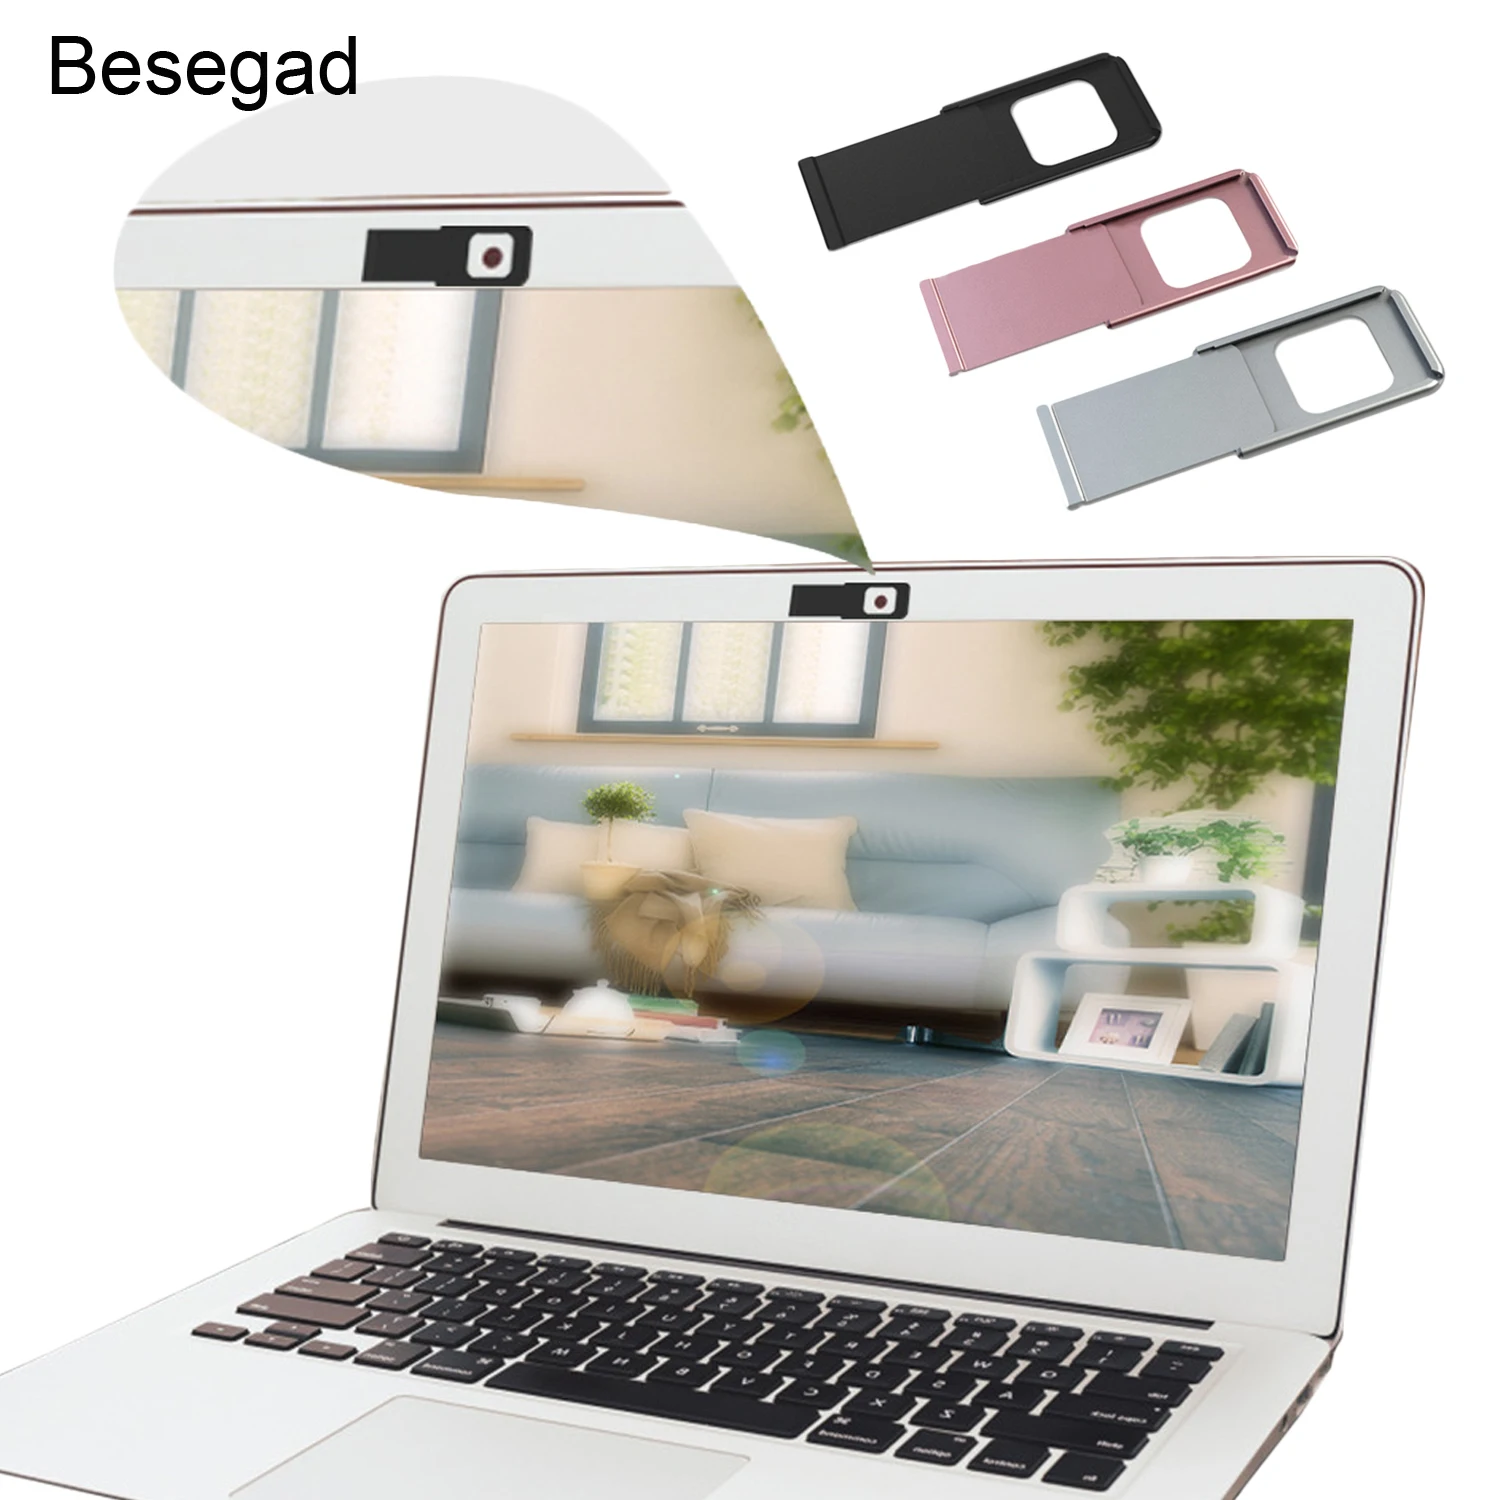 VONETS 3 шт. ультра тонкая металлическая веб-камера крышка слайдер Защитная линза для iPhone iPad MacBook Pro ноутбук планшет смартфон